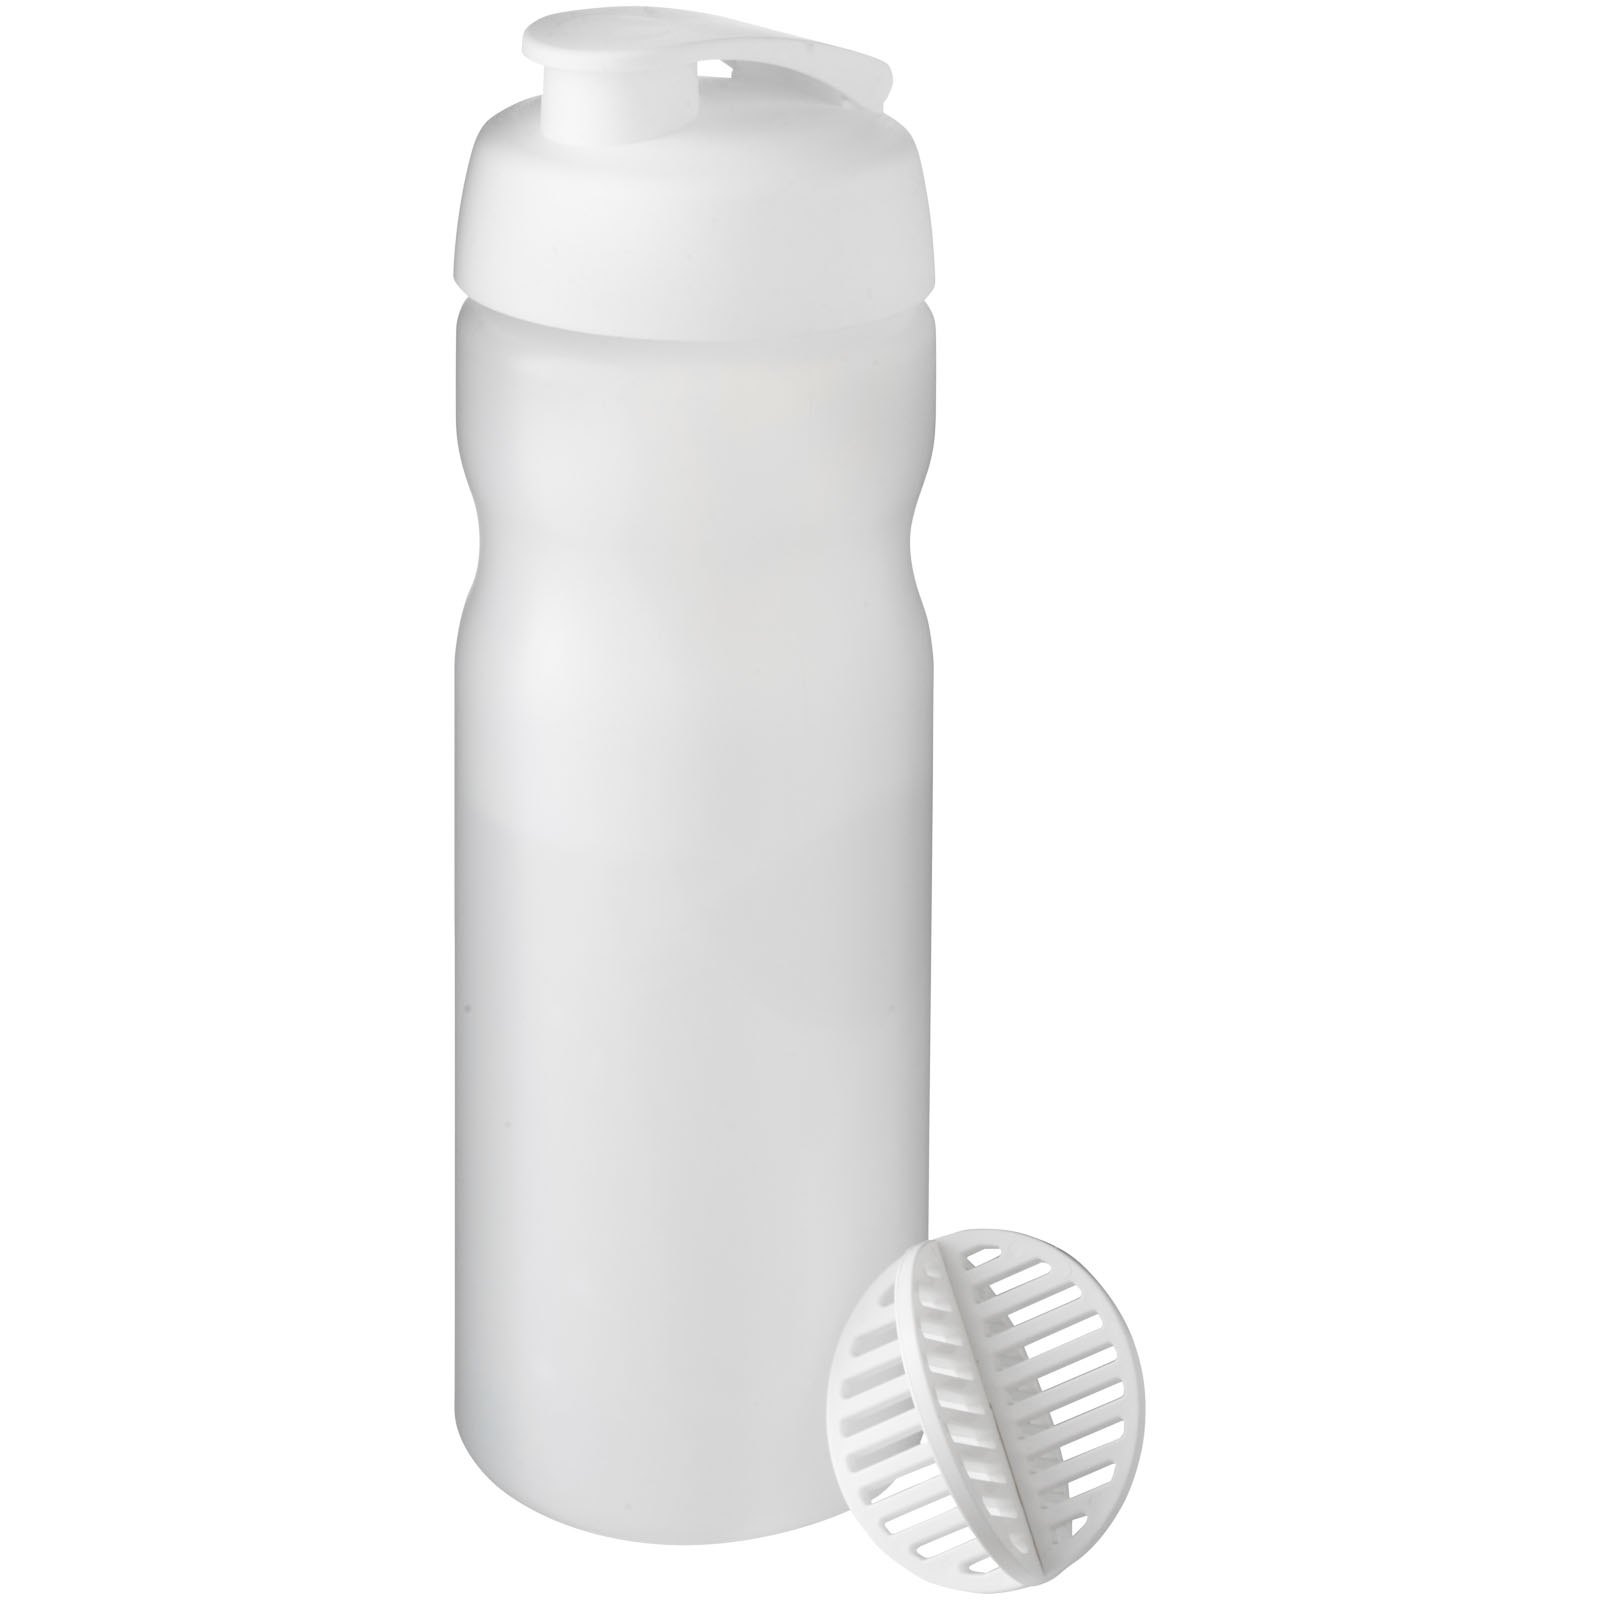 Protein Shaker Sport Bottle - West Liss